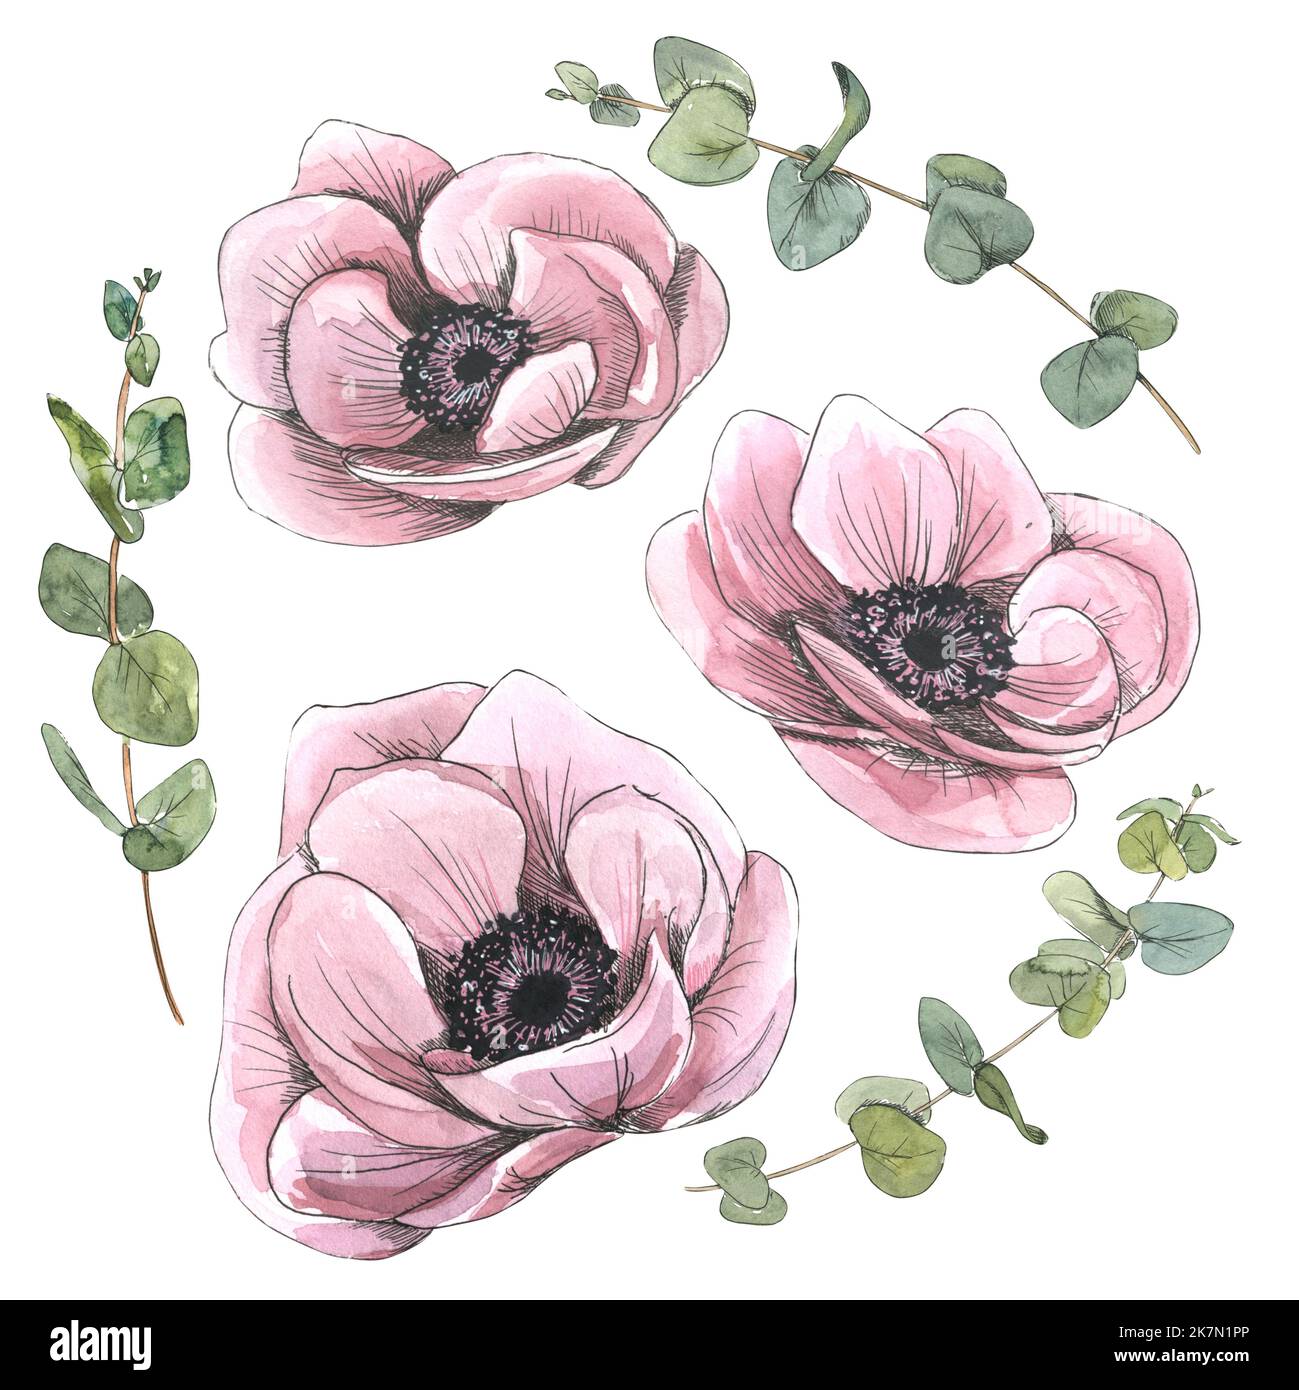 Boutons de fleurs d'anémones roses avec fleurs d'eucalyptus. Illustration aquarelle dans un style d'esquisse avec des éléments graphiques. Objets isolés du PARIS Banque D'Images